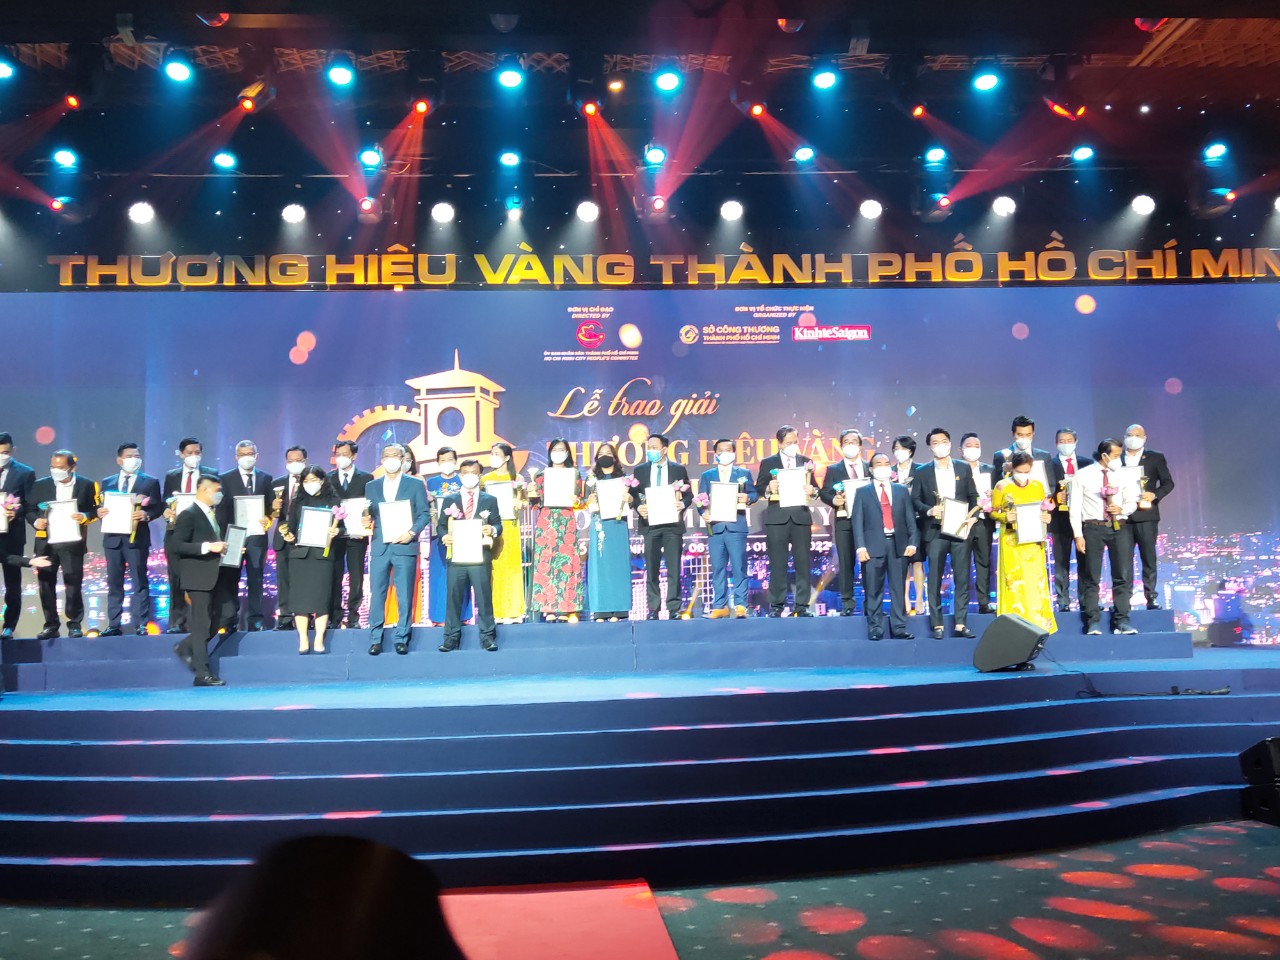 TP.HCM công bố 30 doanh nghiệp đoạt giải Thương hiệu vàng TP.HCM 2021 - Ảnh 2.